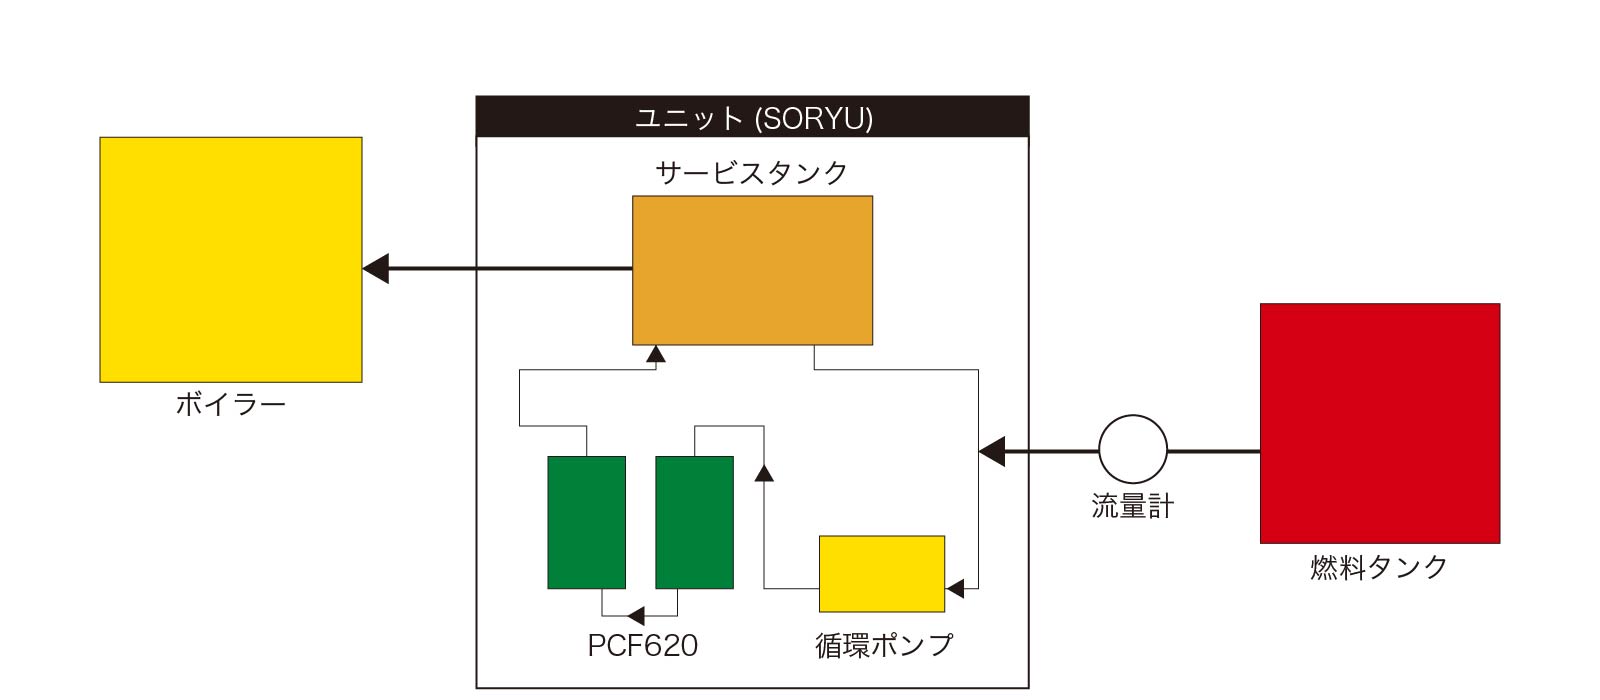 SORYUボイラー用ユニット(PCF)燃料配管略図の表